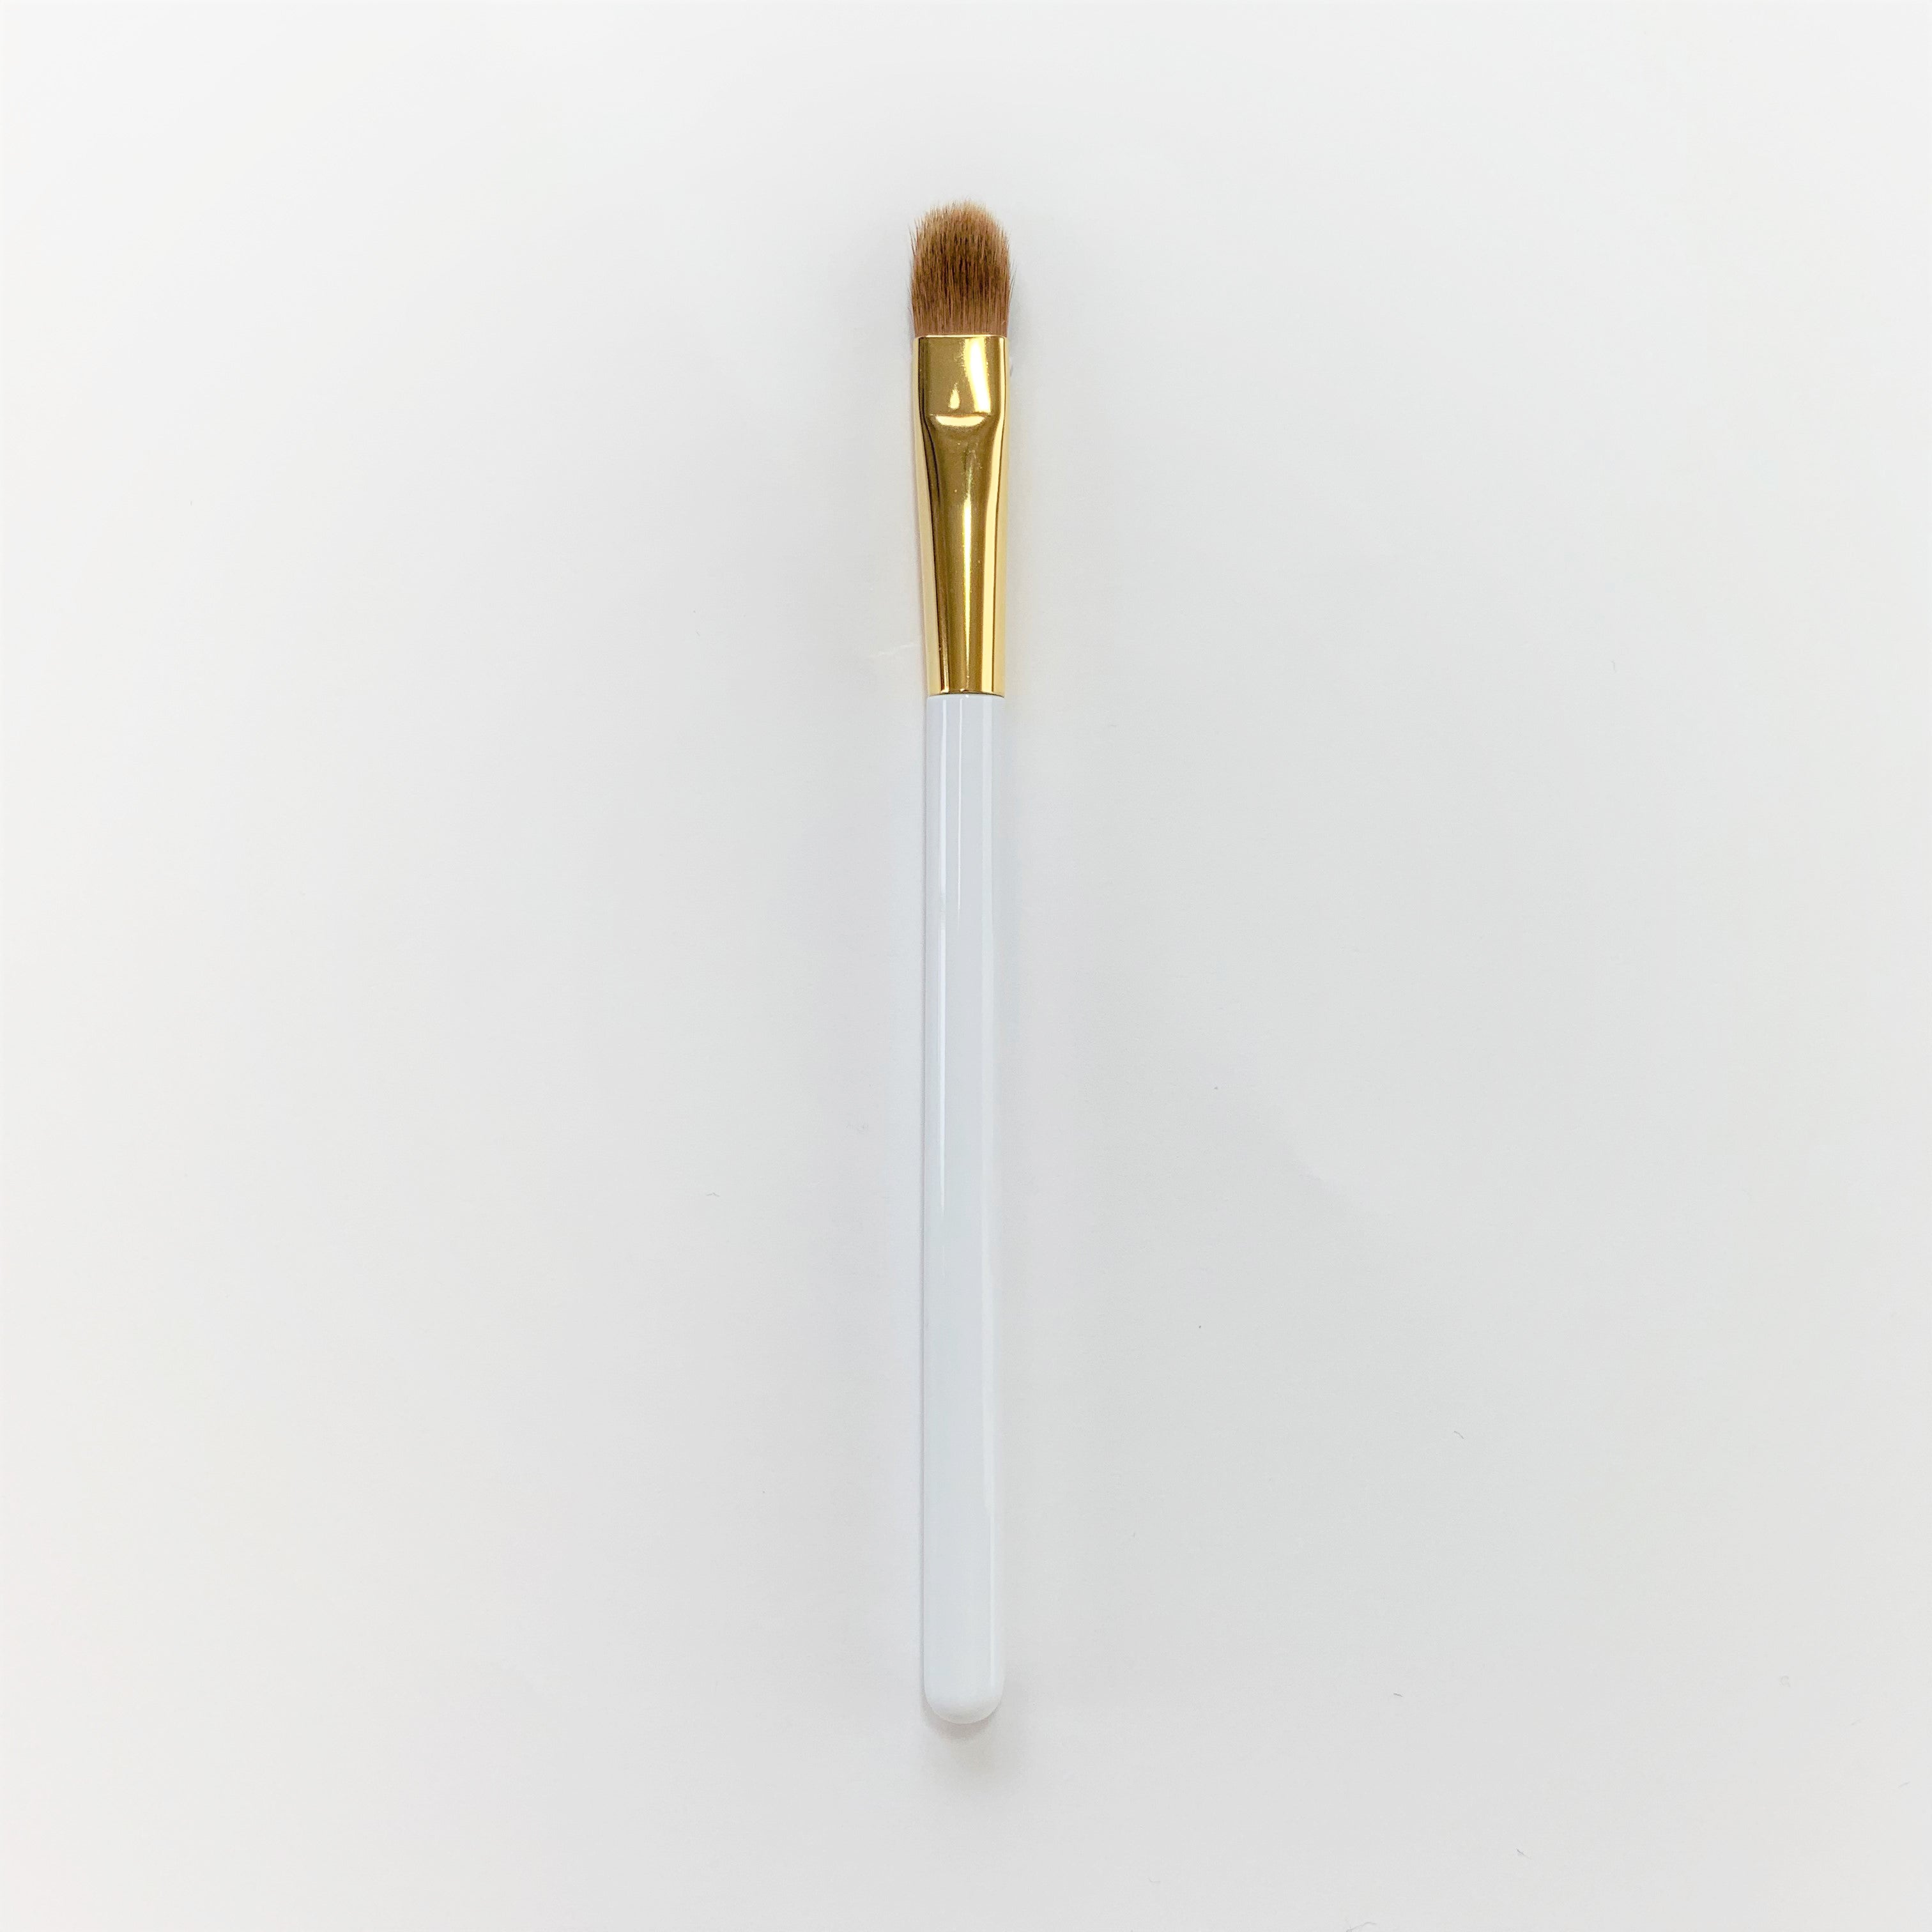 Koyudo Medium Eyeshadow Brush in White - Fude Beauty, Japanese Makeup Brushes